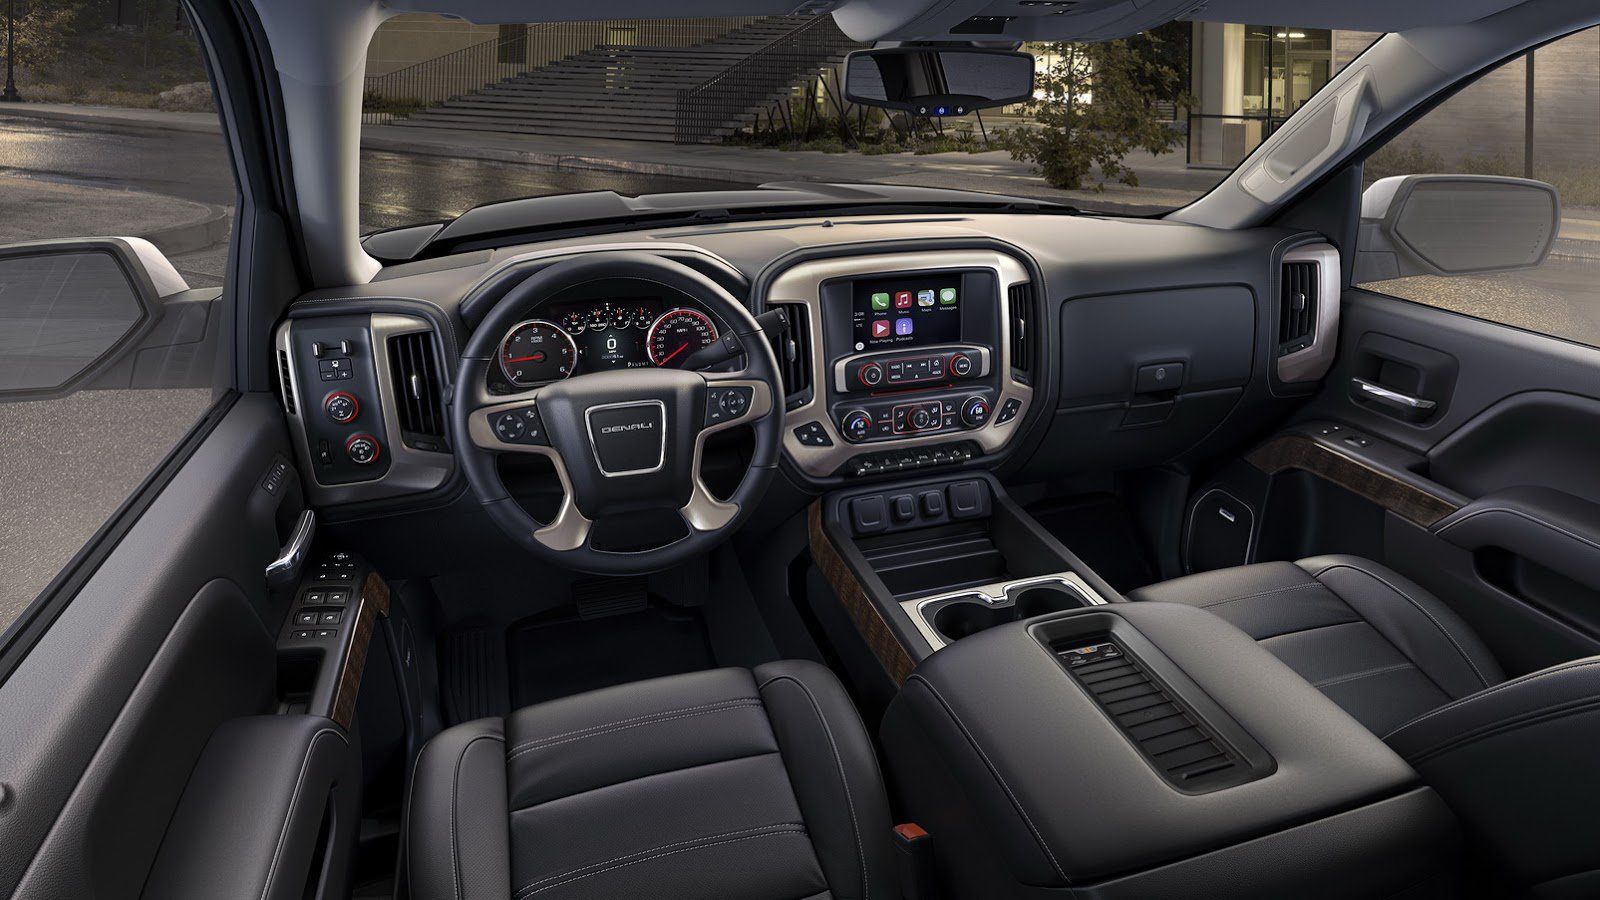 Kabina nabízí prvotřídní luxus včetně koženého čalounění, GMC Sierra Denali Ultimate.